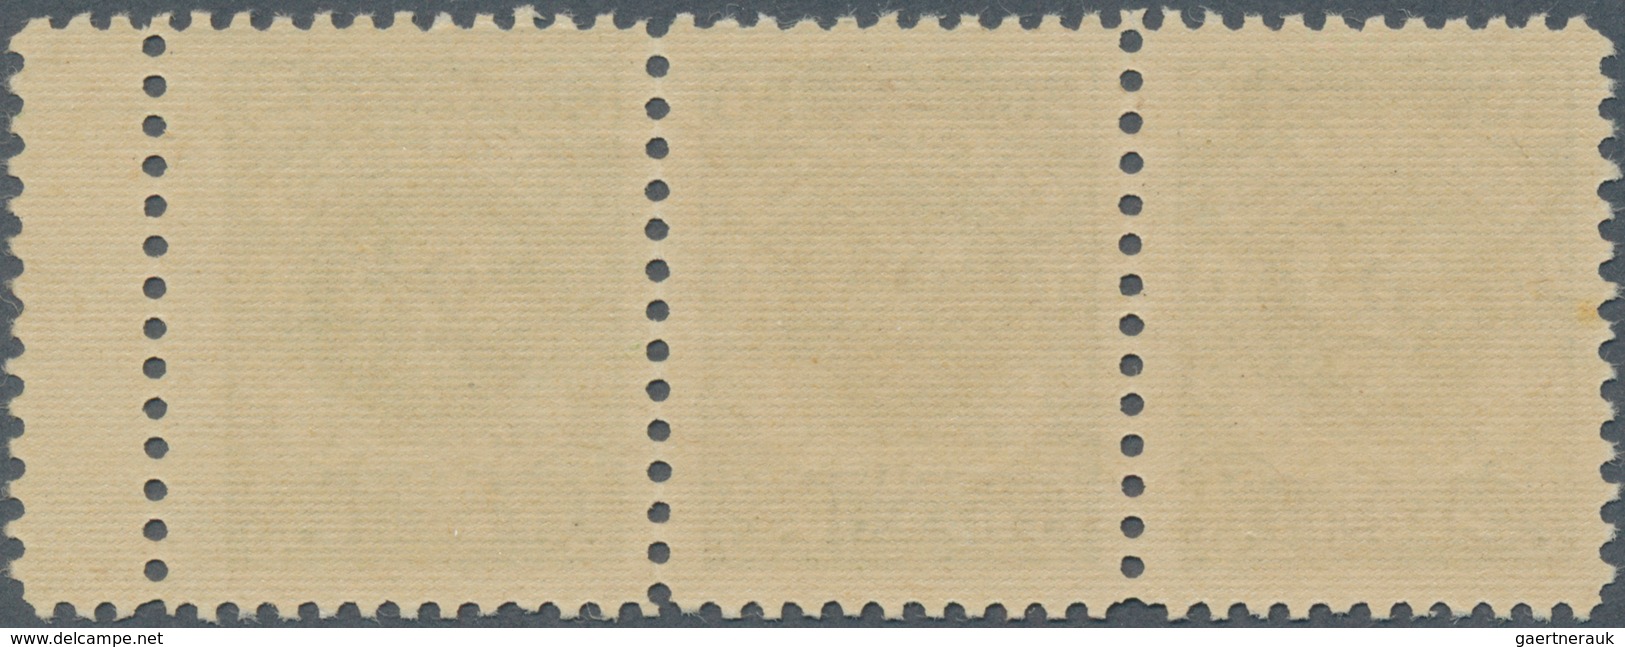 Memel: 1923, Dreierstrefen "2 CENT" Auf 50 M Dabei Plattenfehler: Farbklecks Auf 5 Der Rechten "50" - Memel (Klaipeda) 1923